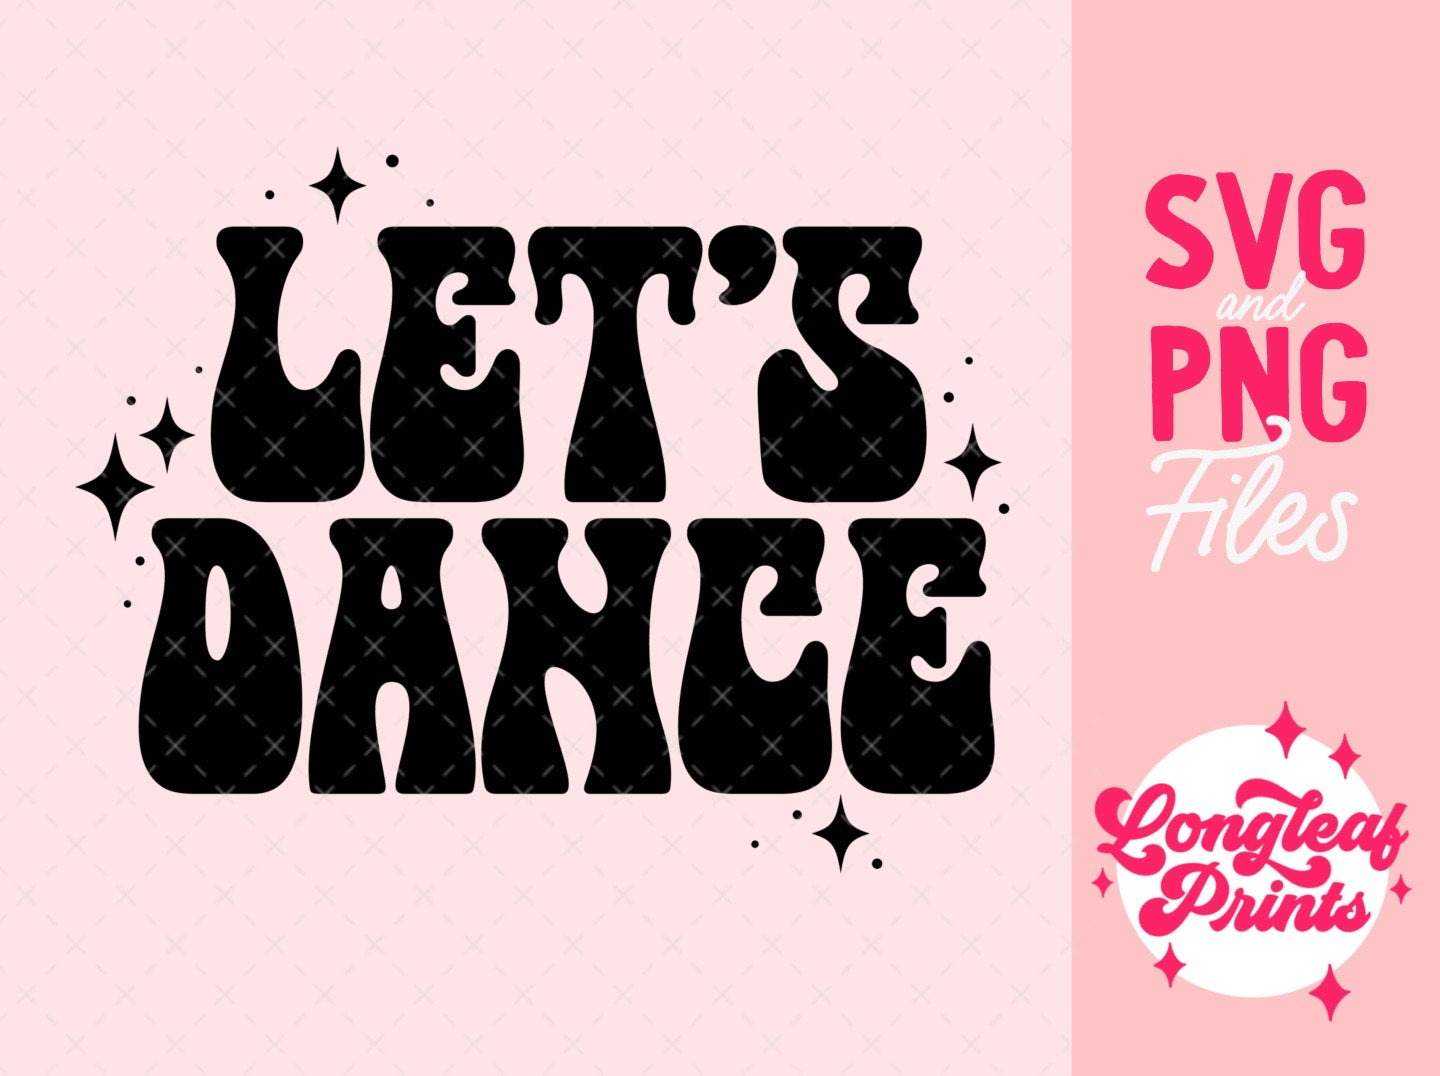 Let's Dance SVG Digital Download Design File